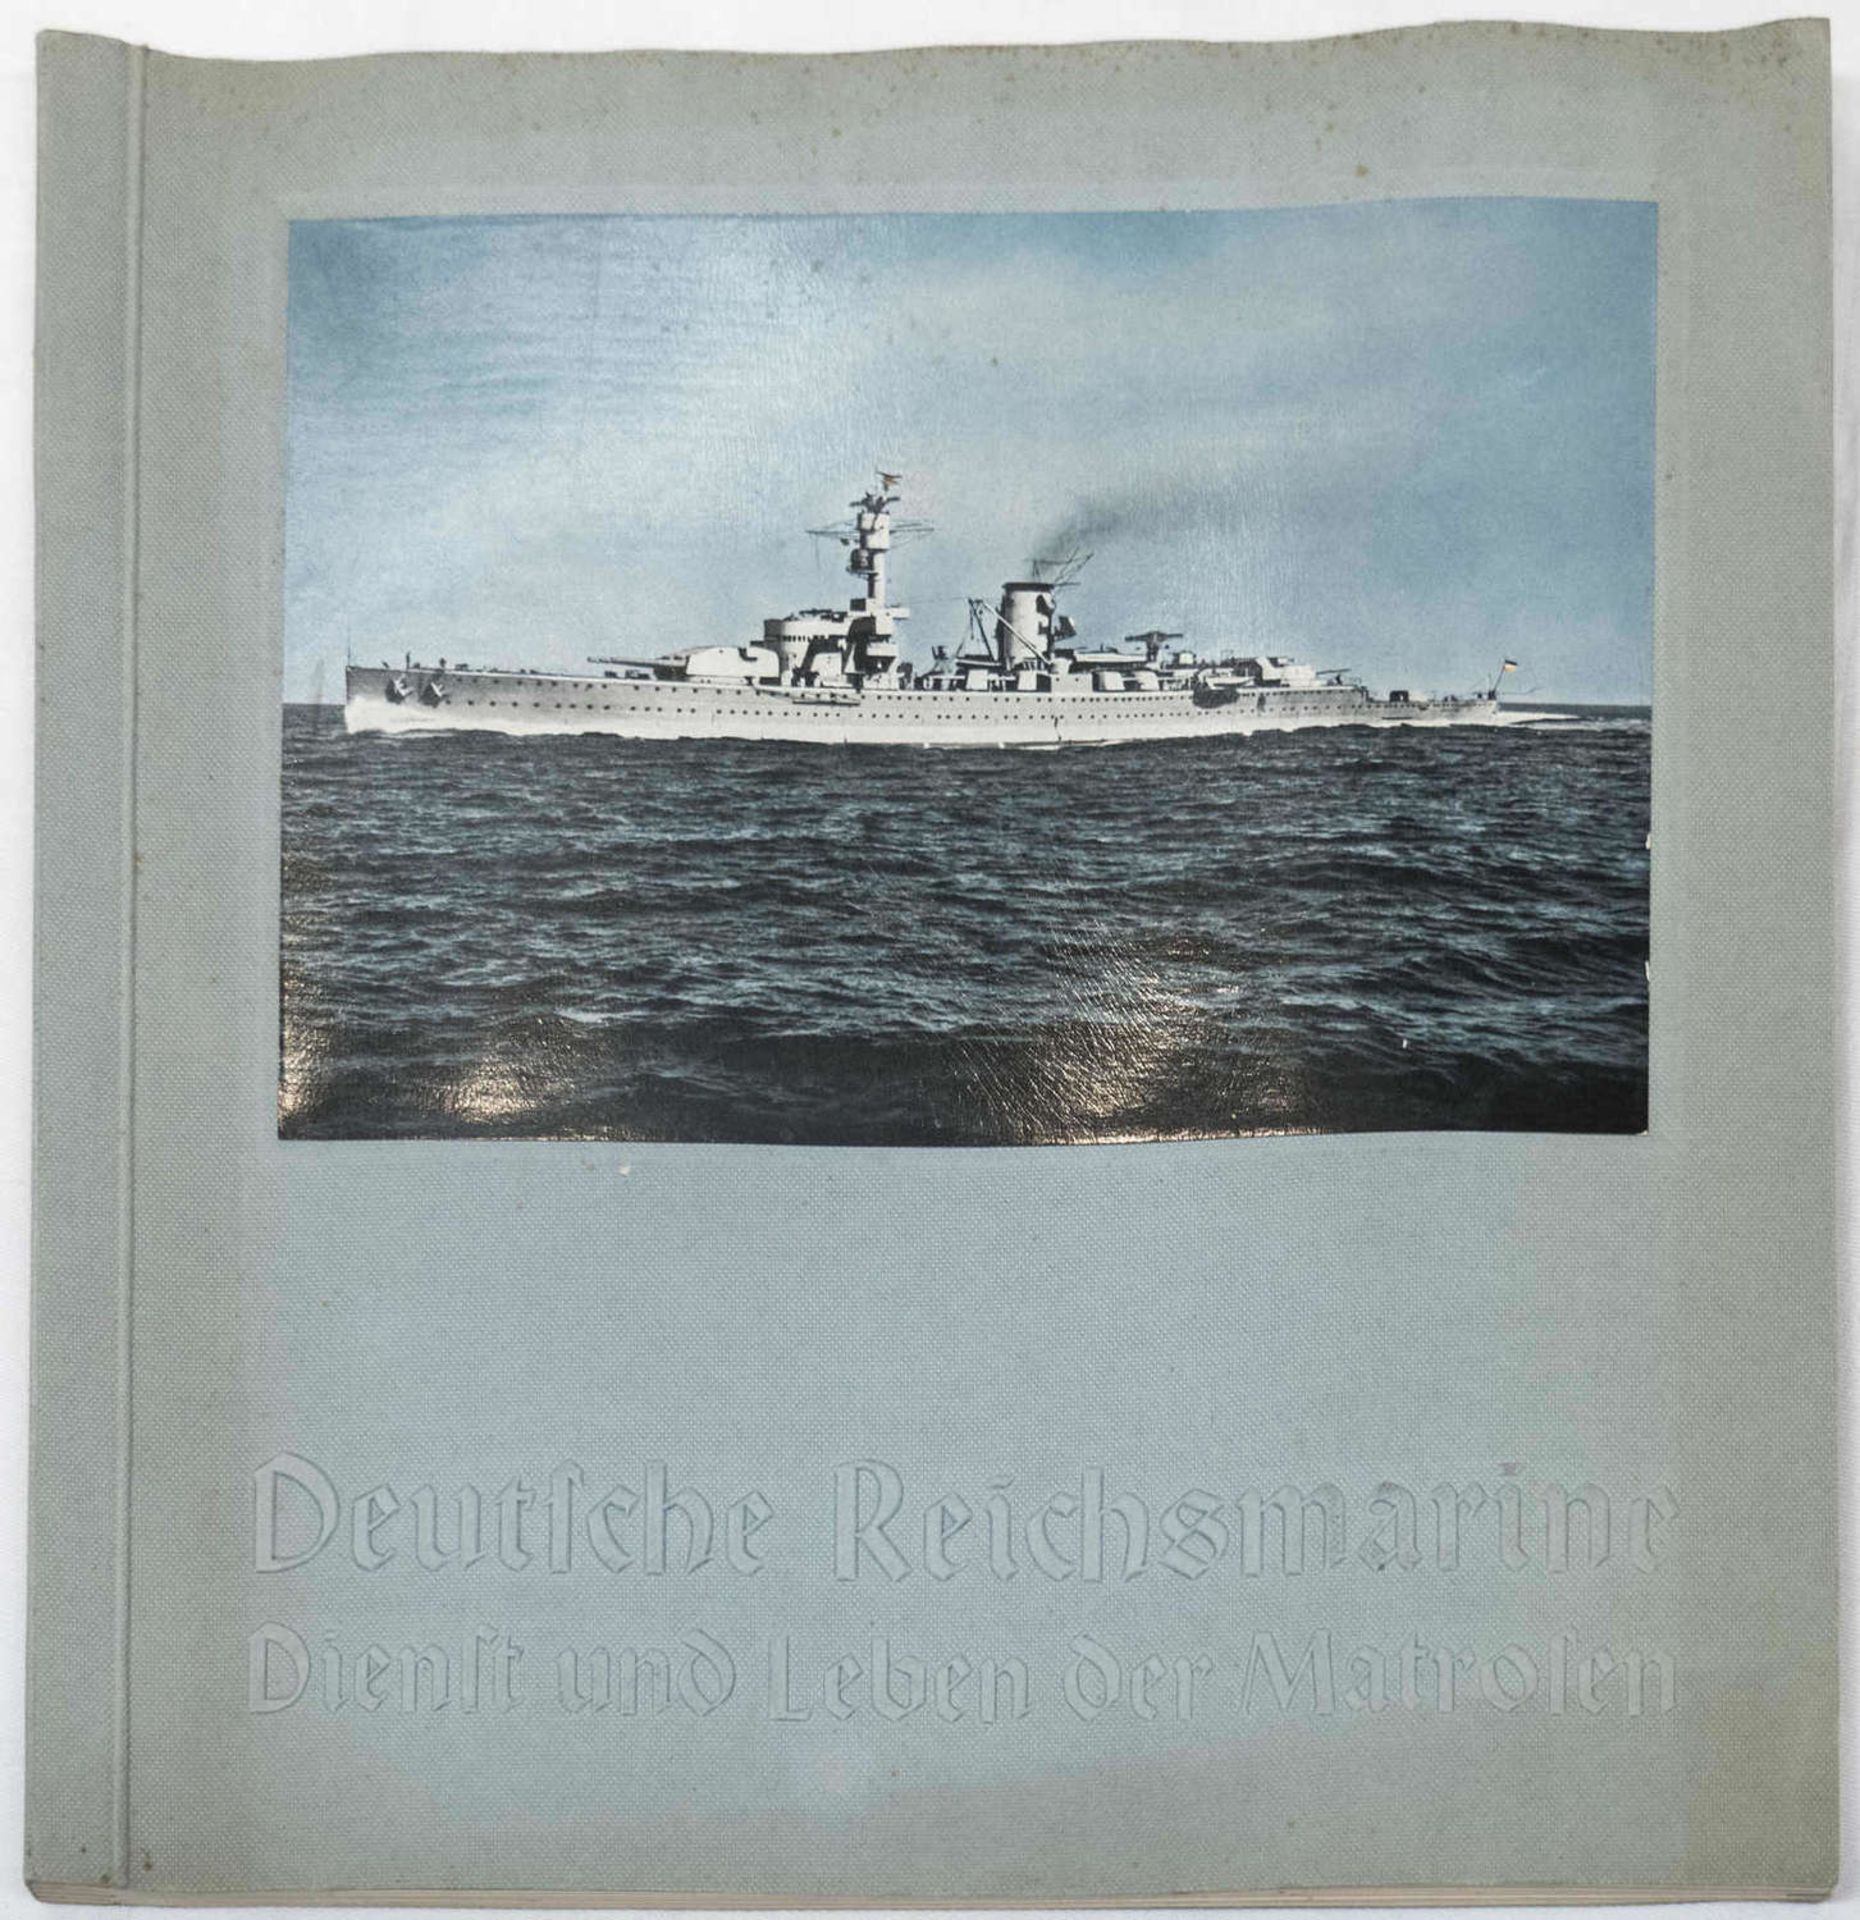 Sammelbilder - Album "Deutsche Reichsmarine" - Dienst und Leben der Matrosen. 1934.